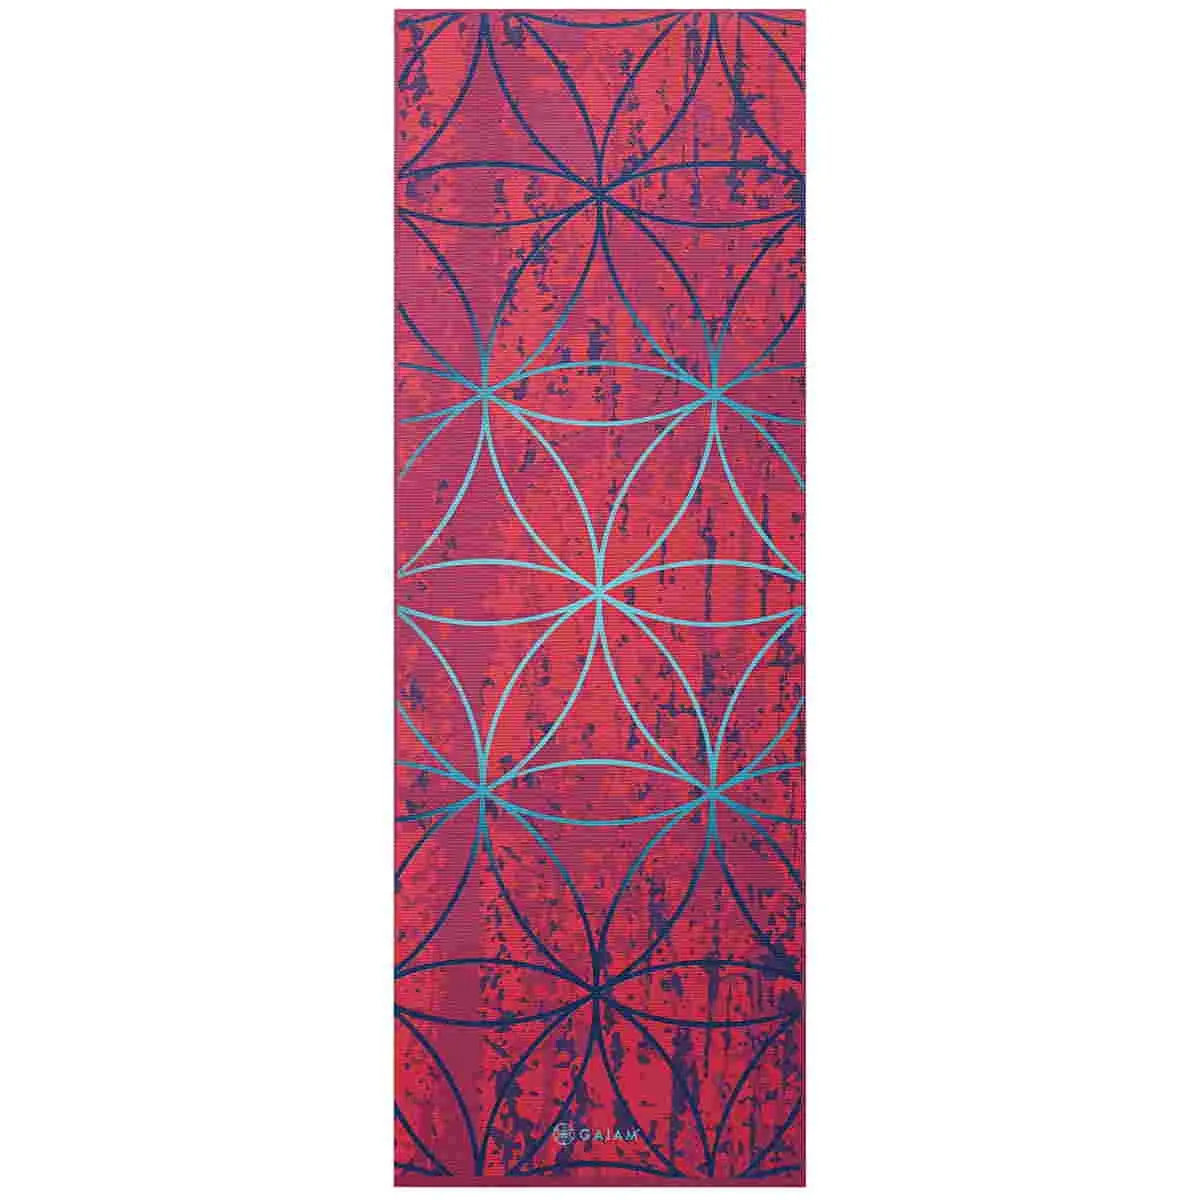 GAIAM Yoga Matte dunkles Pink mit geometrischem Muster